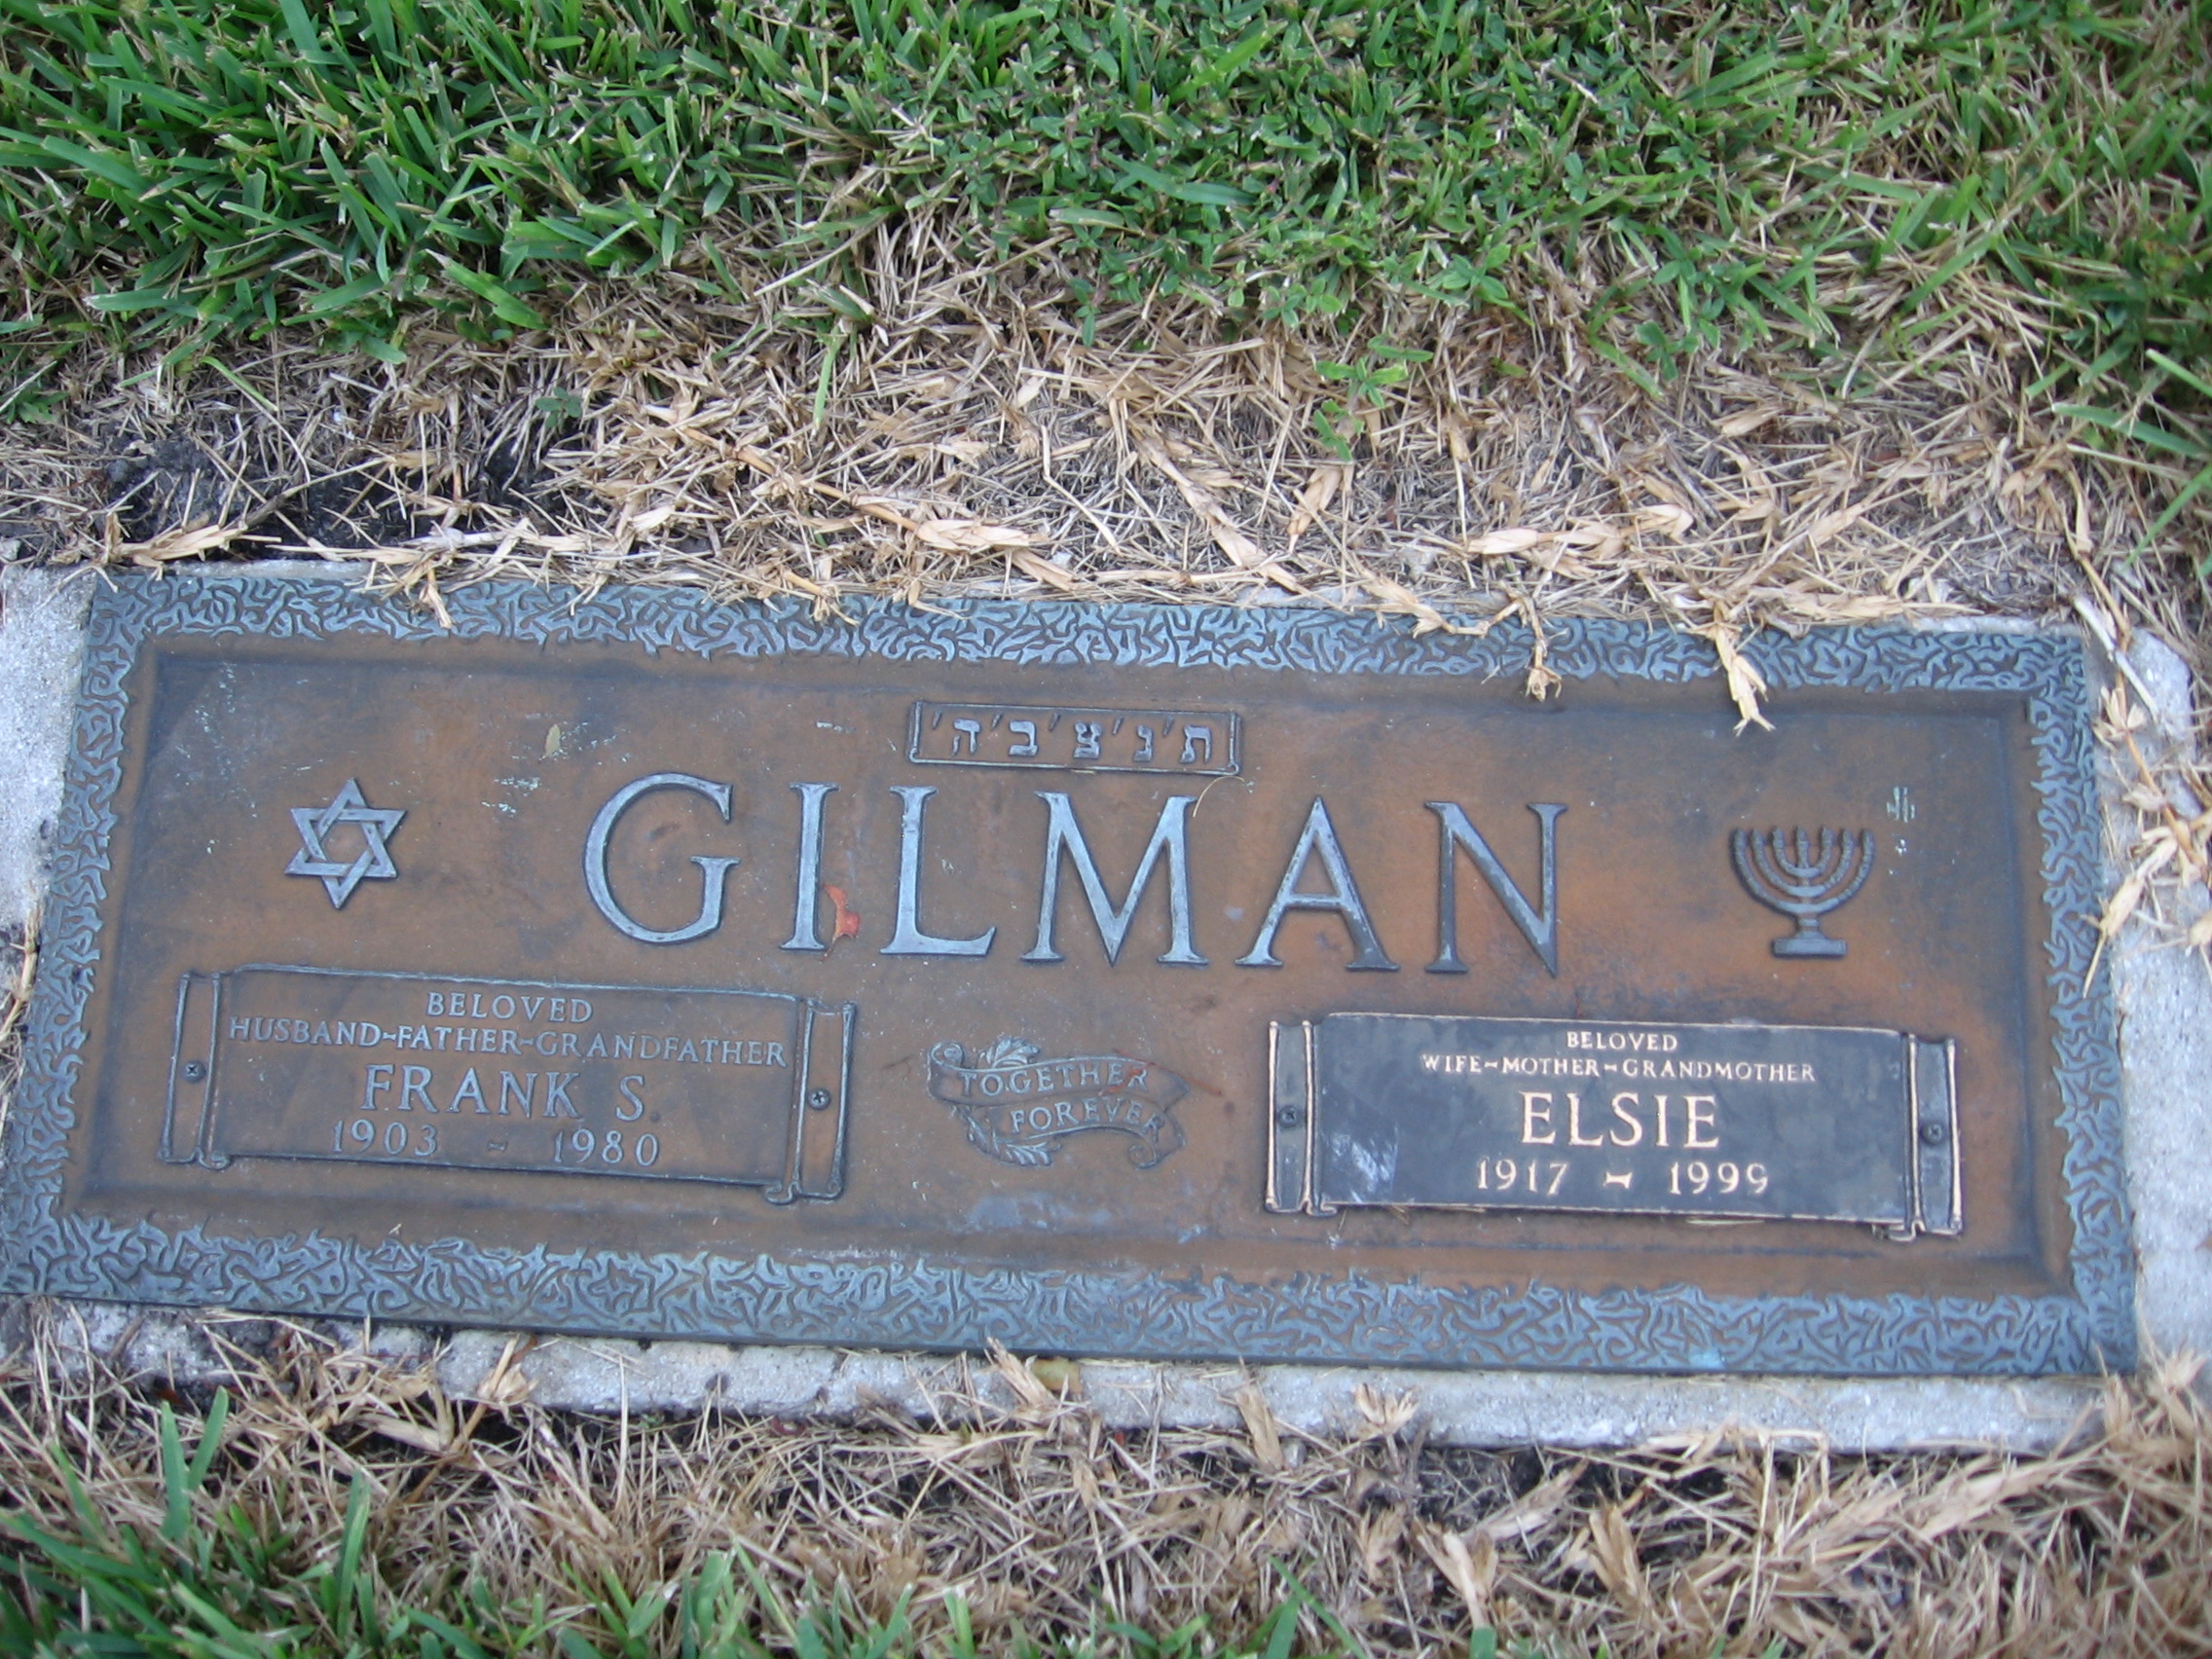 Frank S Gilman